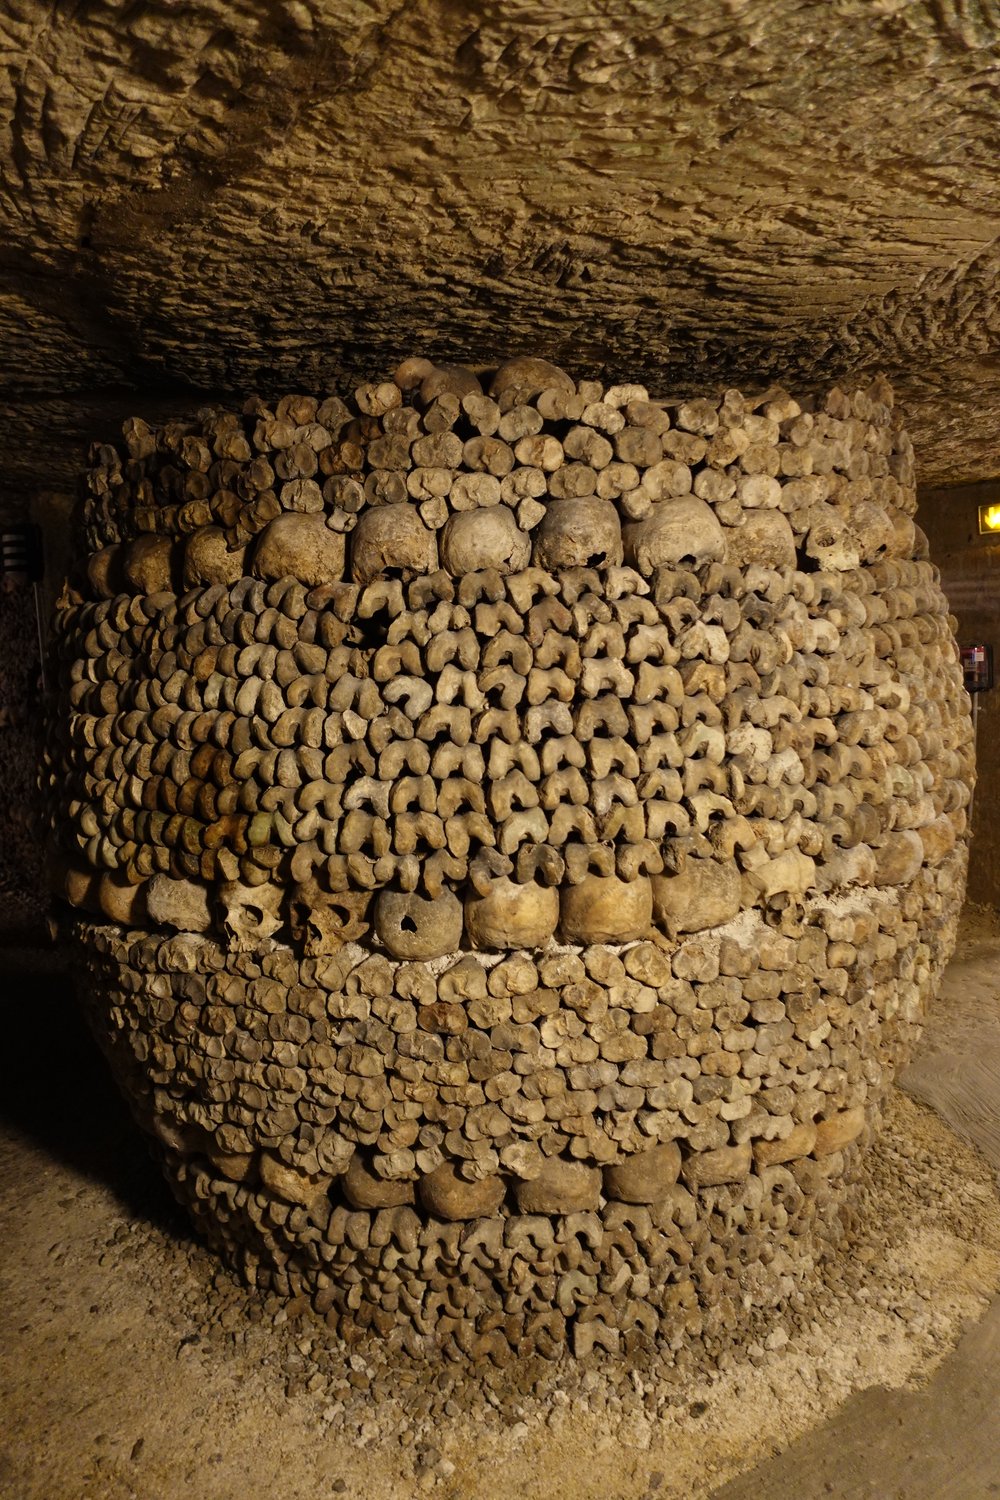 Barrel shaped piles of bones at Catacombs in Paris